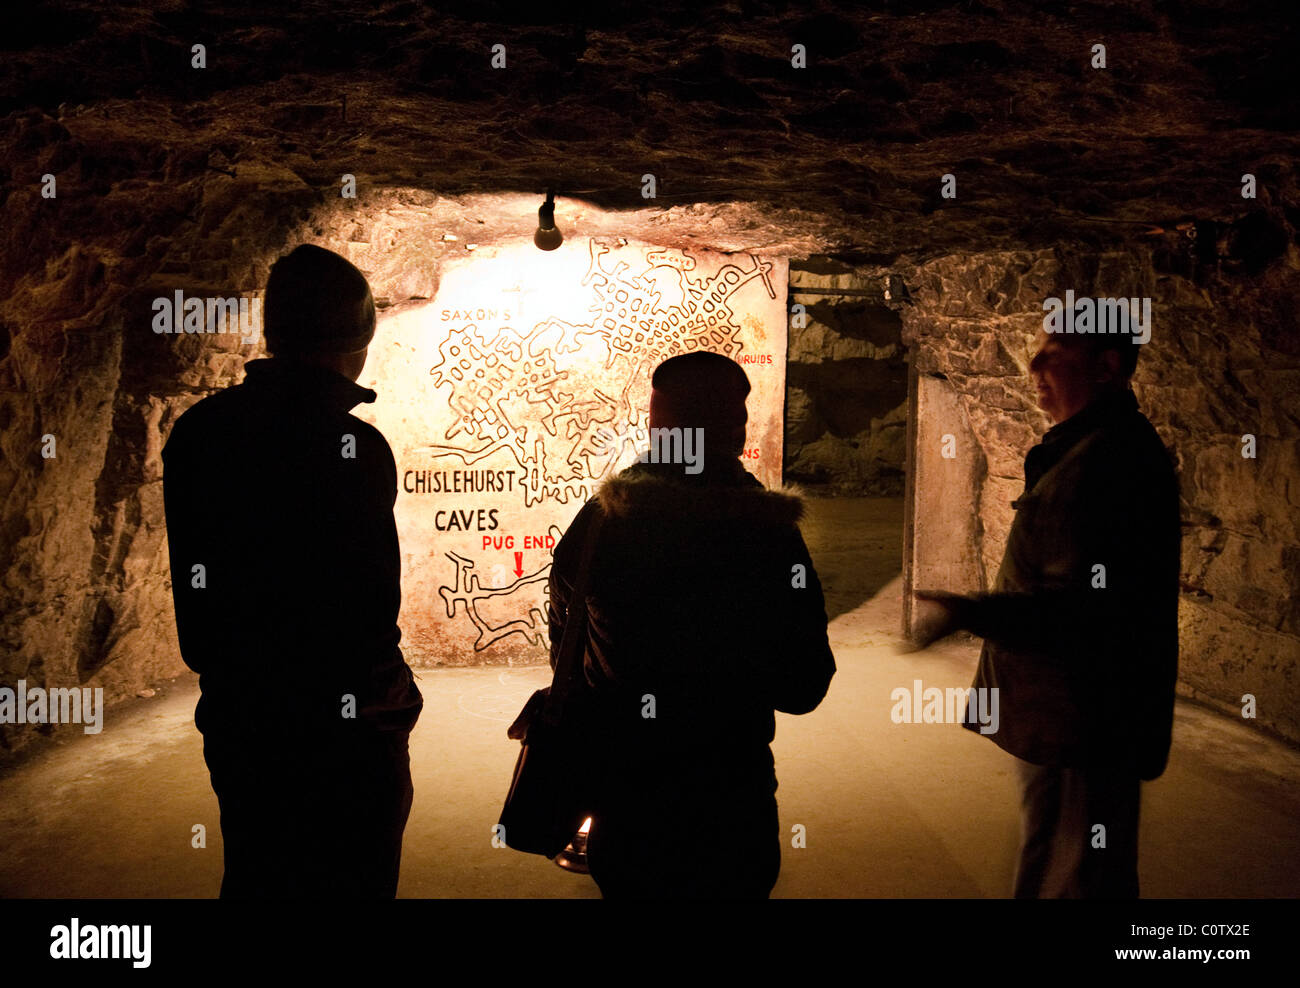 Zwei Personen und Reiseleiter auf einer Tour durch die Höhlen werden von ihrem Guide eine Karte gezeigt; Chislehurst Caves, Chislehurst, Kent, UK Stockfoto